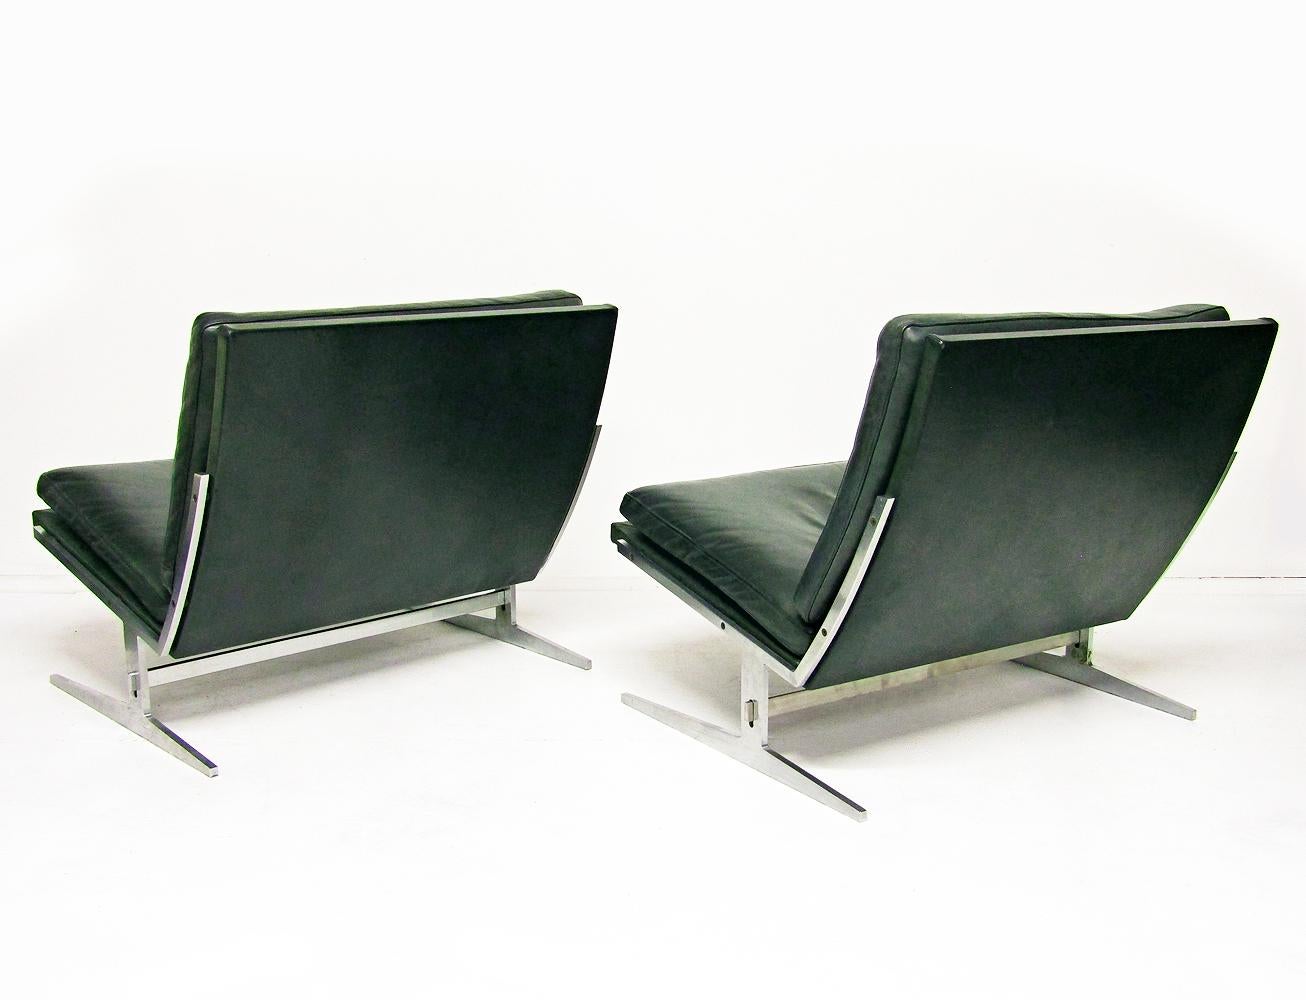 Deux chaises danoises BO-561 en acier et cuir par Preben Fabricius & Jorgen Kastholm pour BO-EX.

Datant des années 1960, ces classiques du design architectural sont robustes et très confortables. Les couvertures en cuir sont d'une rare couleur